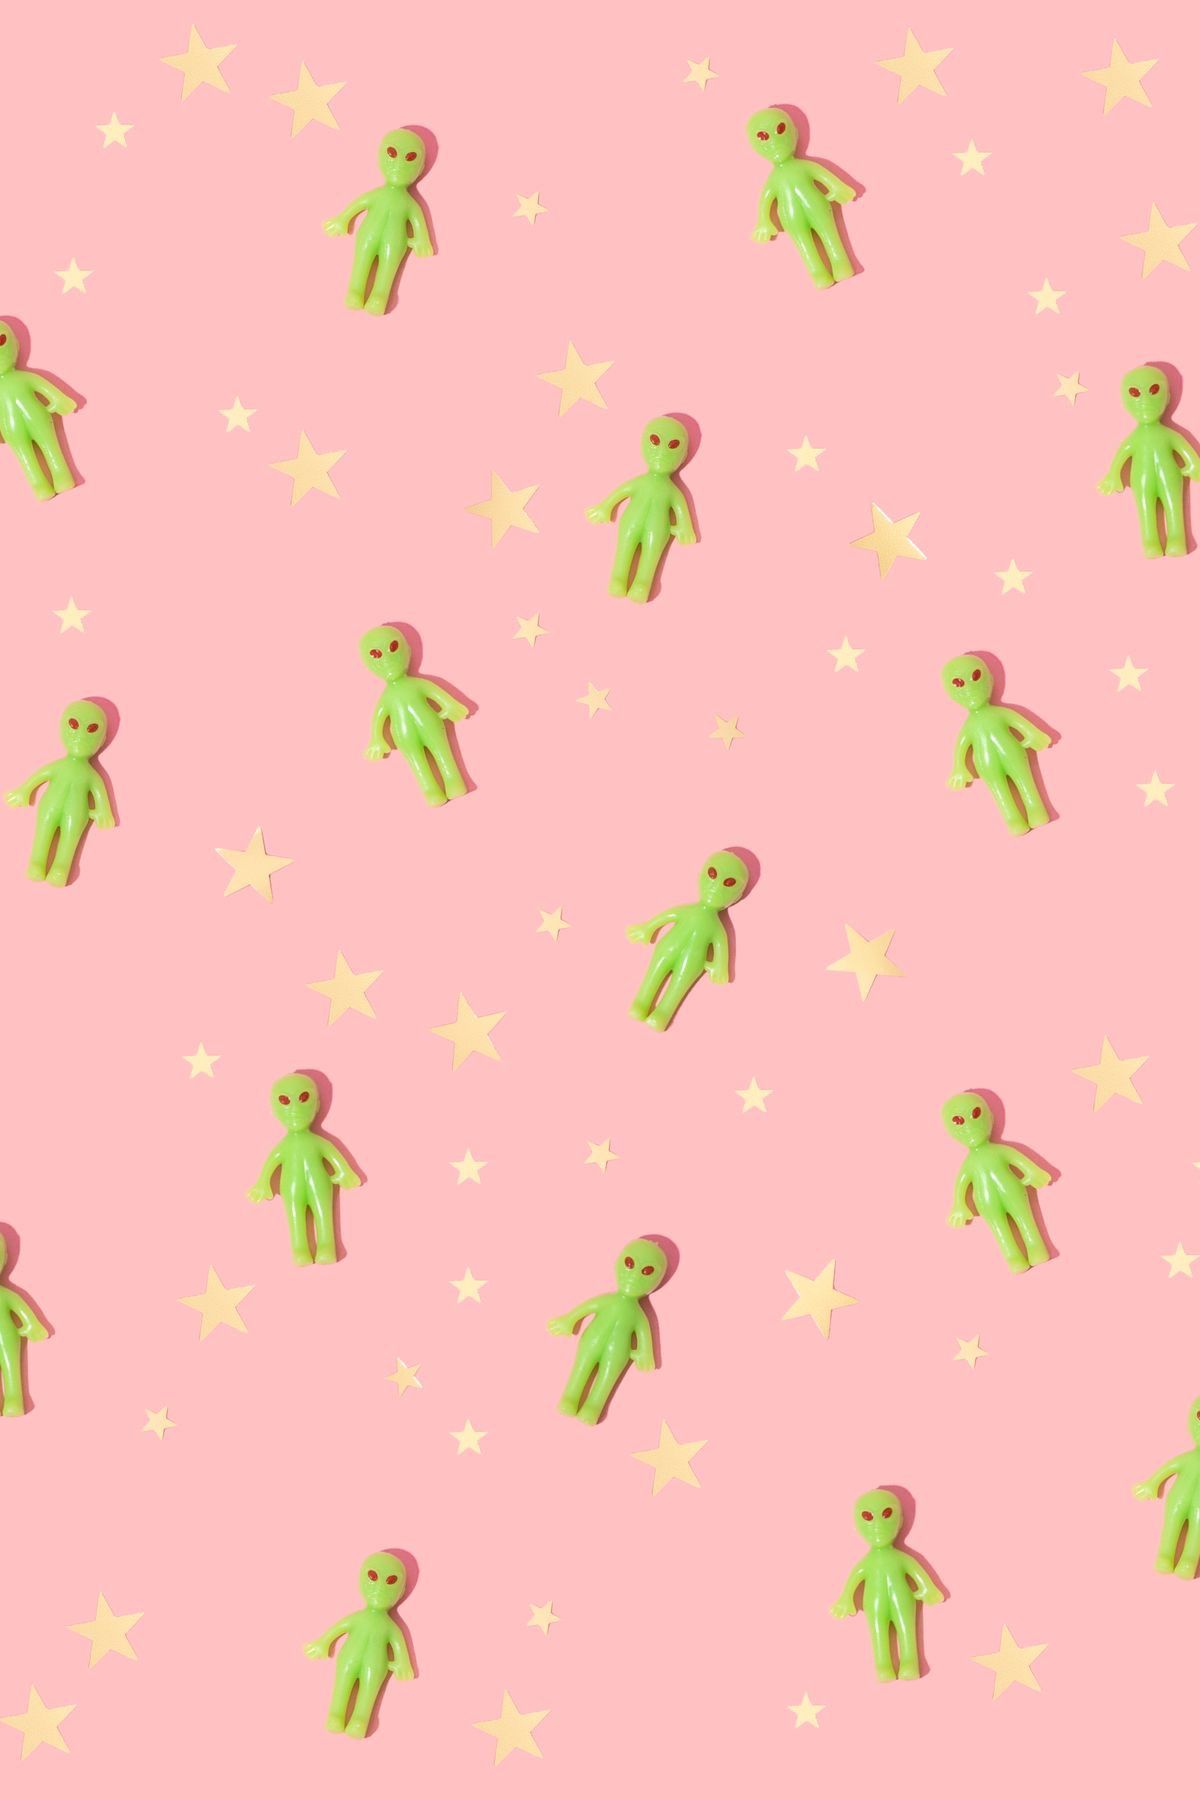 A pattern of green aliens on pink background - Alien, pattern